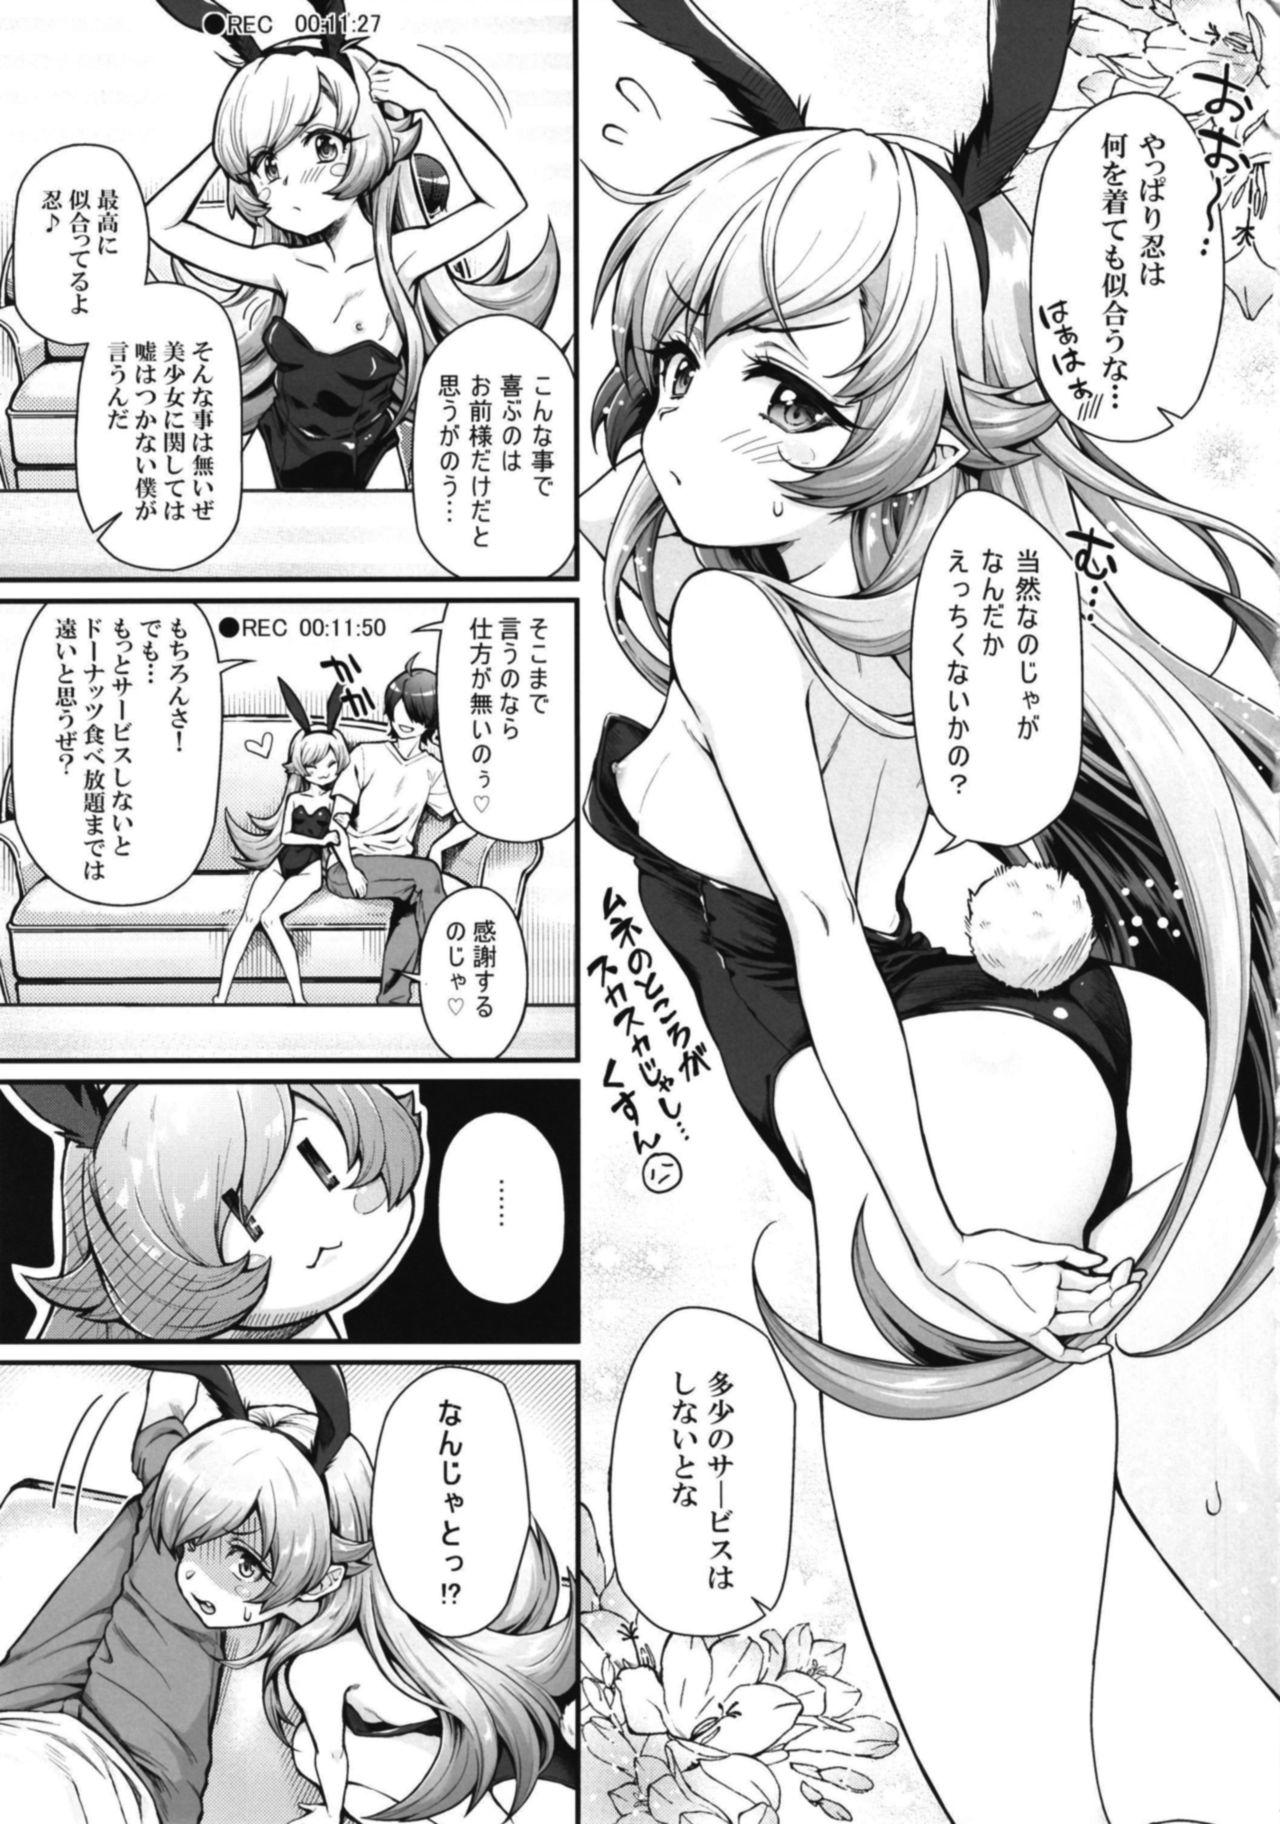 Arabic Pachimonogatari Part 16: Shinobu Debut - Bakemonogatari Women Sucking Dick - Page 5